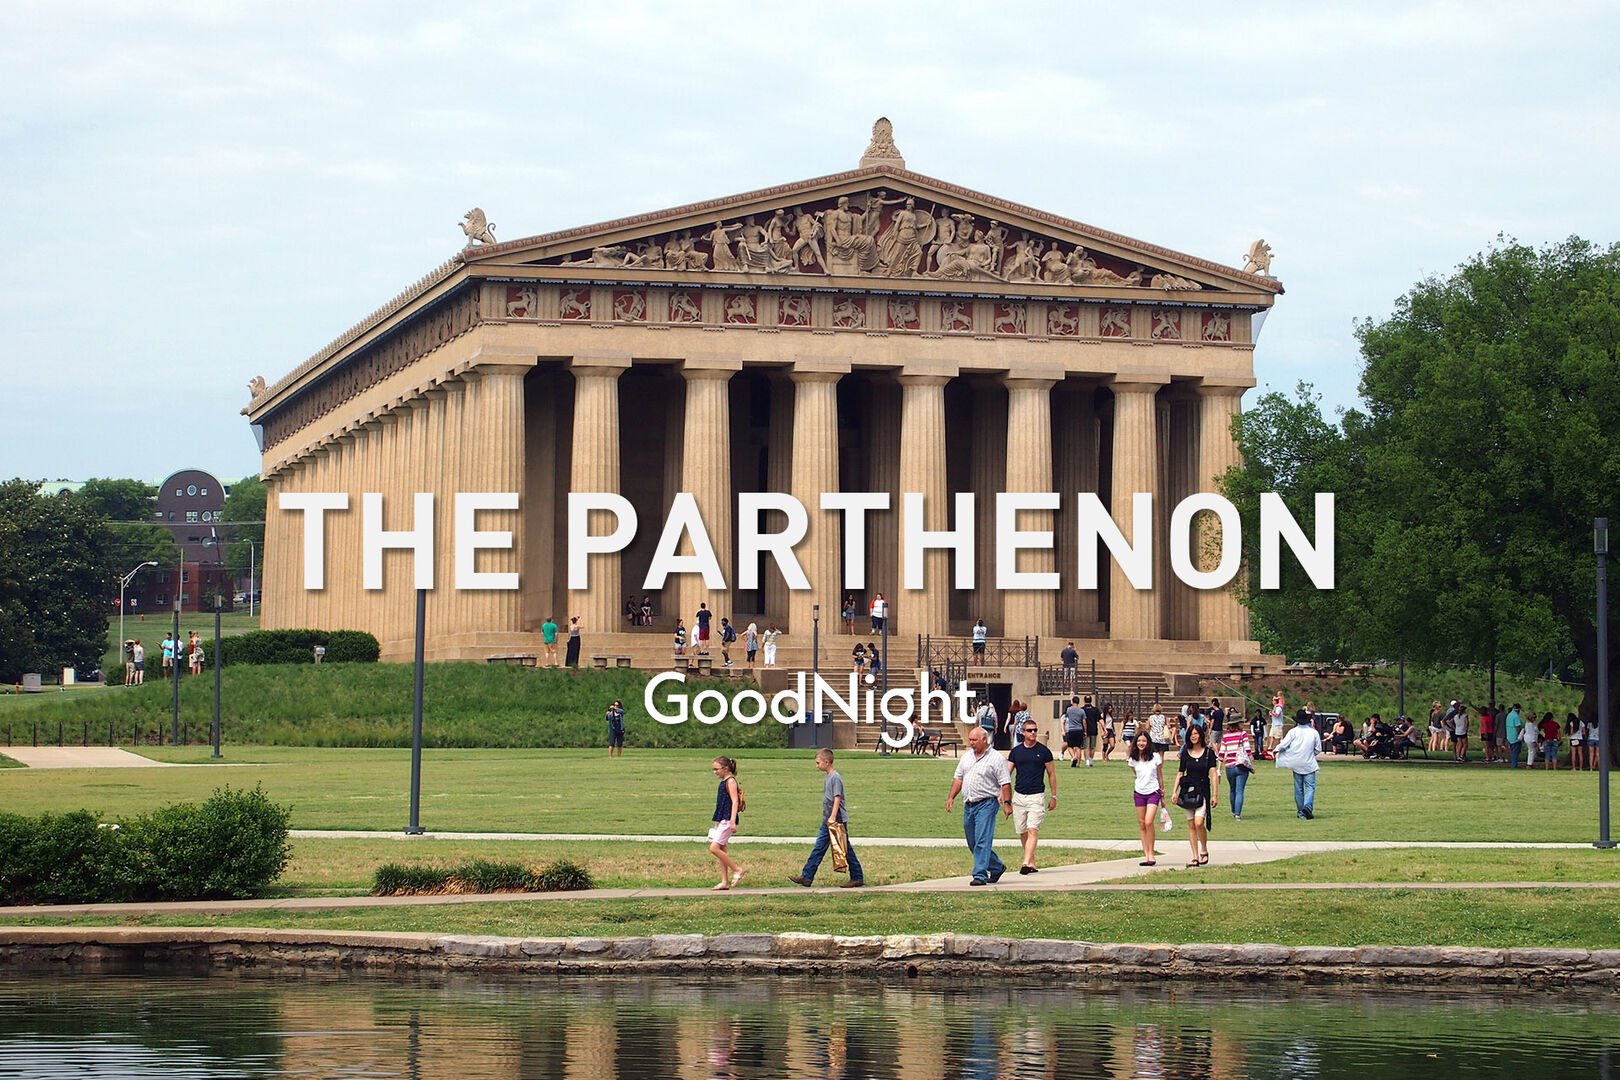 8 min walk: The Parthenon